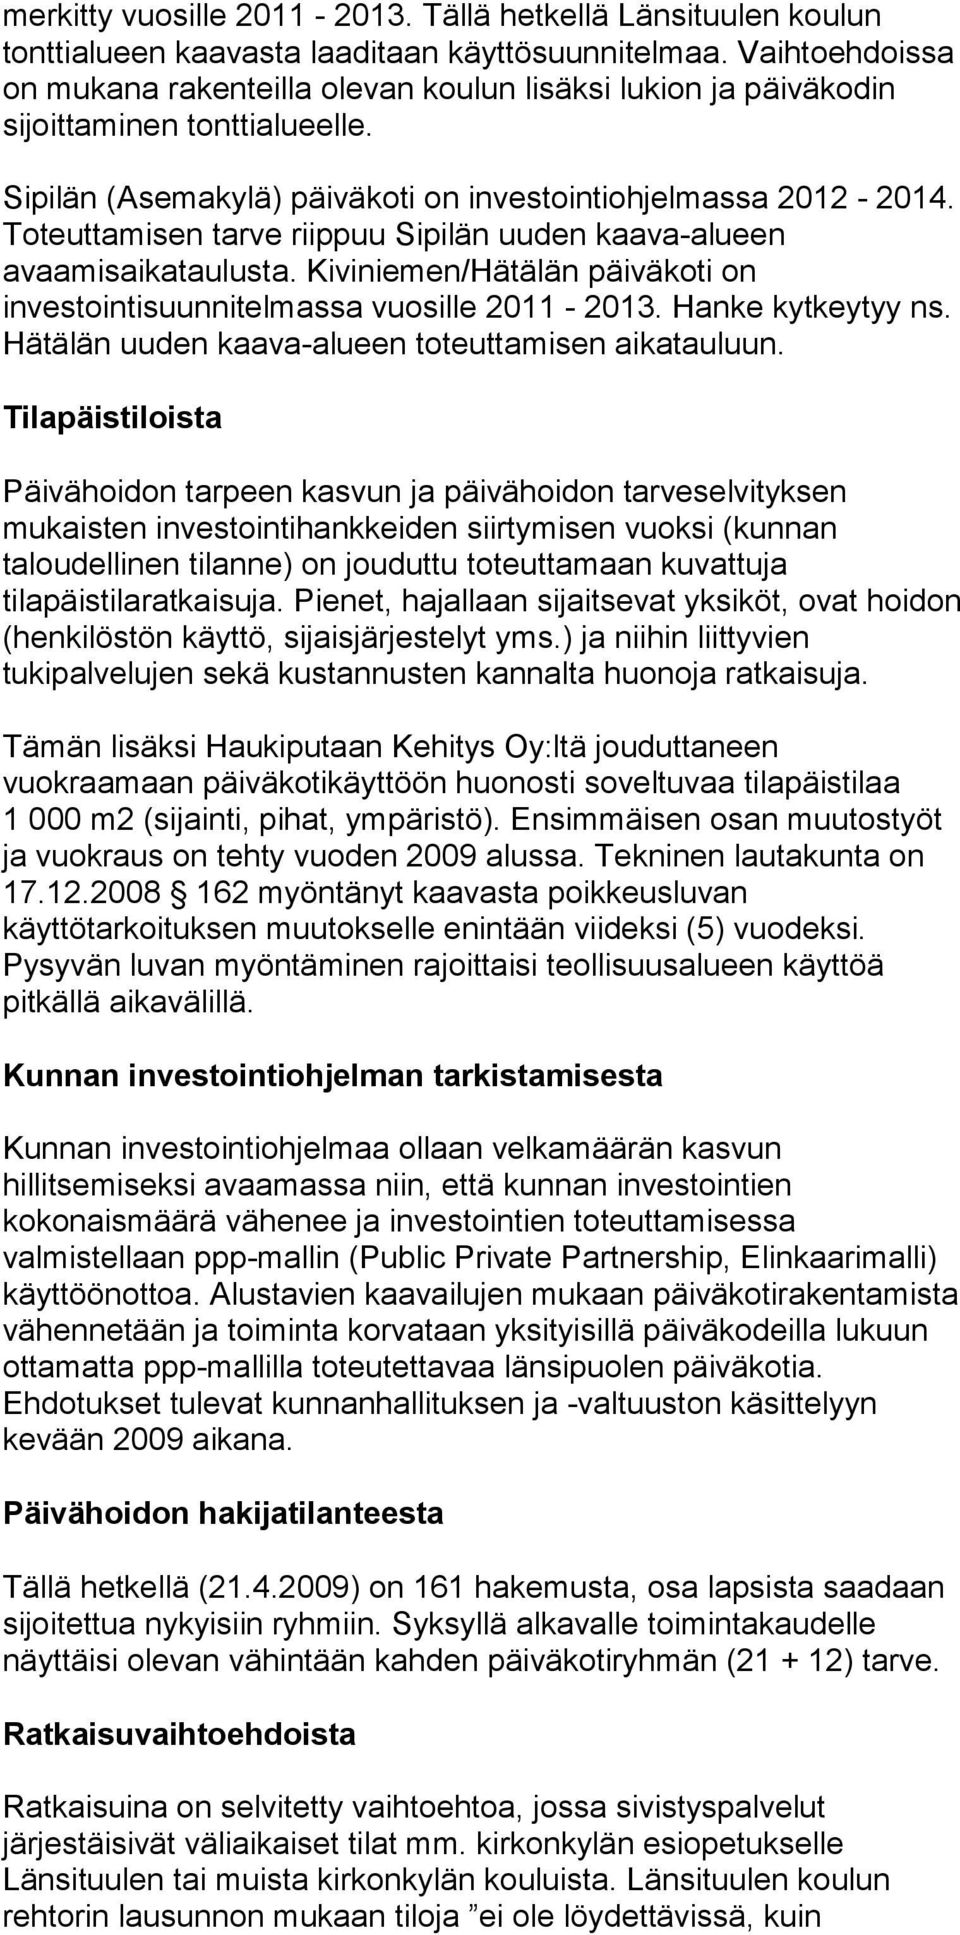 Toteuttamisen tarve riippuu Sipilän uuden kaava-alueen avaamisaikataulusta. Kiviniemen/Hätälän päiväkoti on investointisuunnitelmassa vuosille 2011-2013. Hanke kytkeytyy ns.